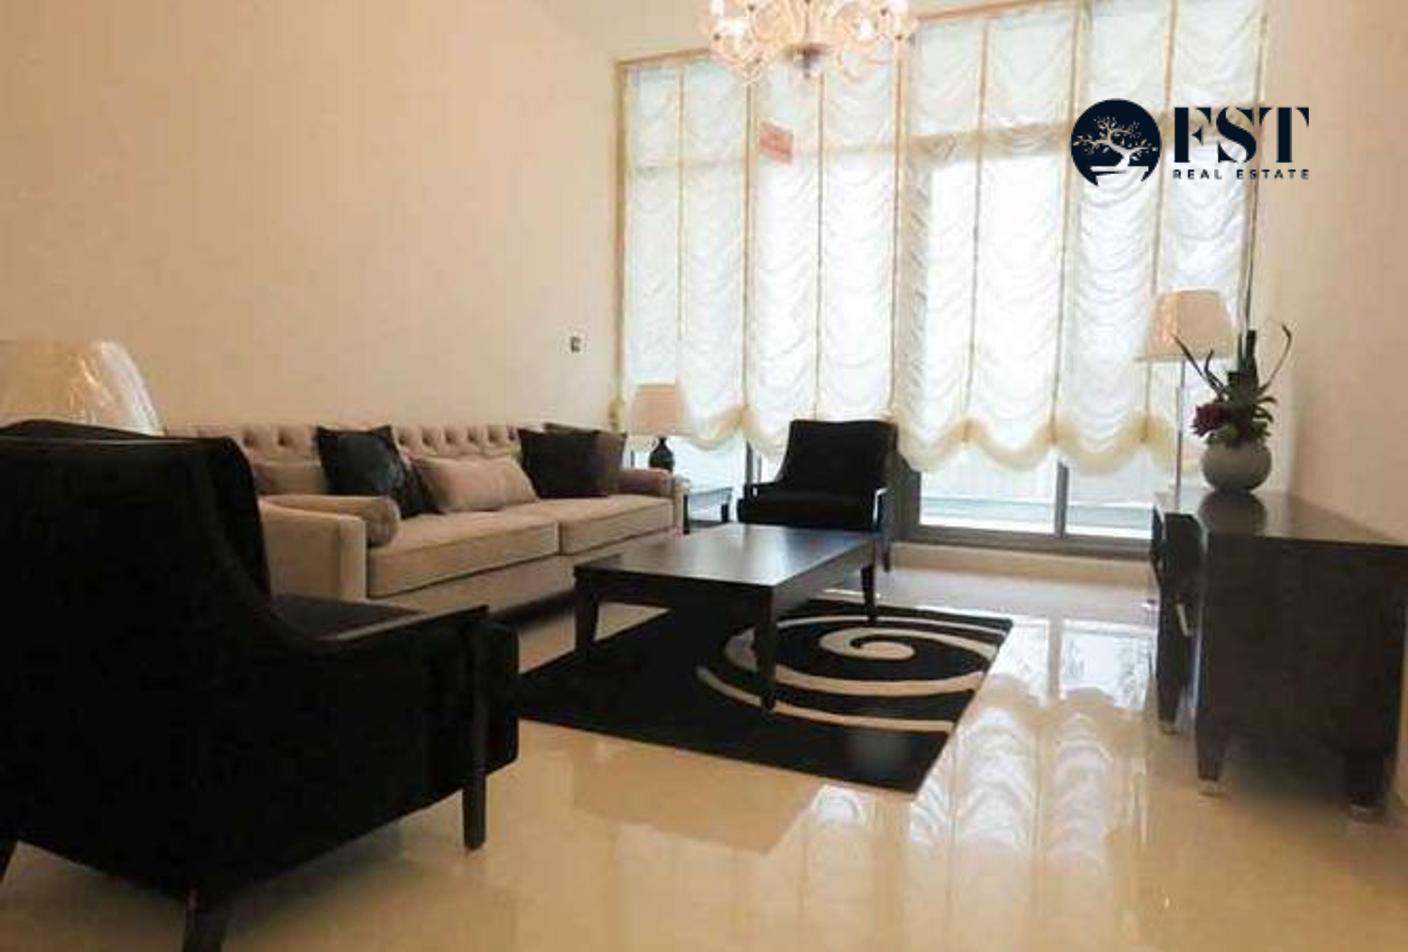 2 bed, 3 bath Apartment for sale in Al Mashroom Meydan, Meydan, Dubai for price AED 1910000 